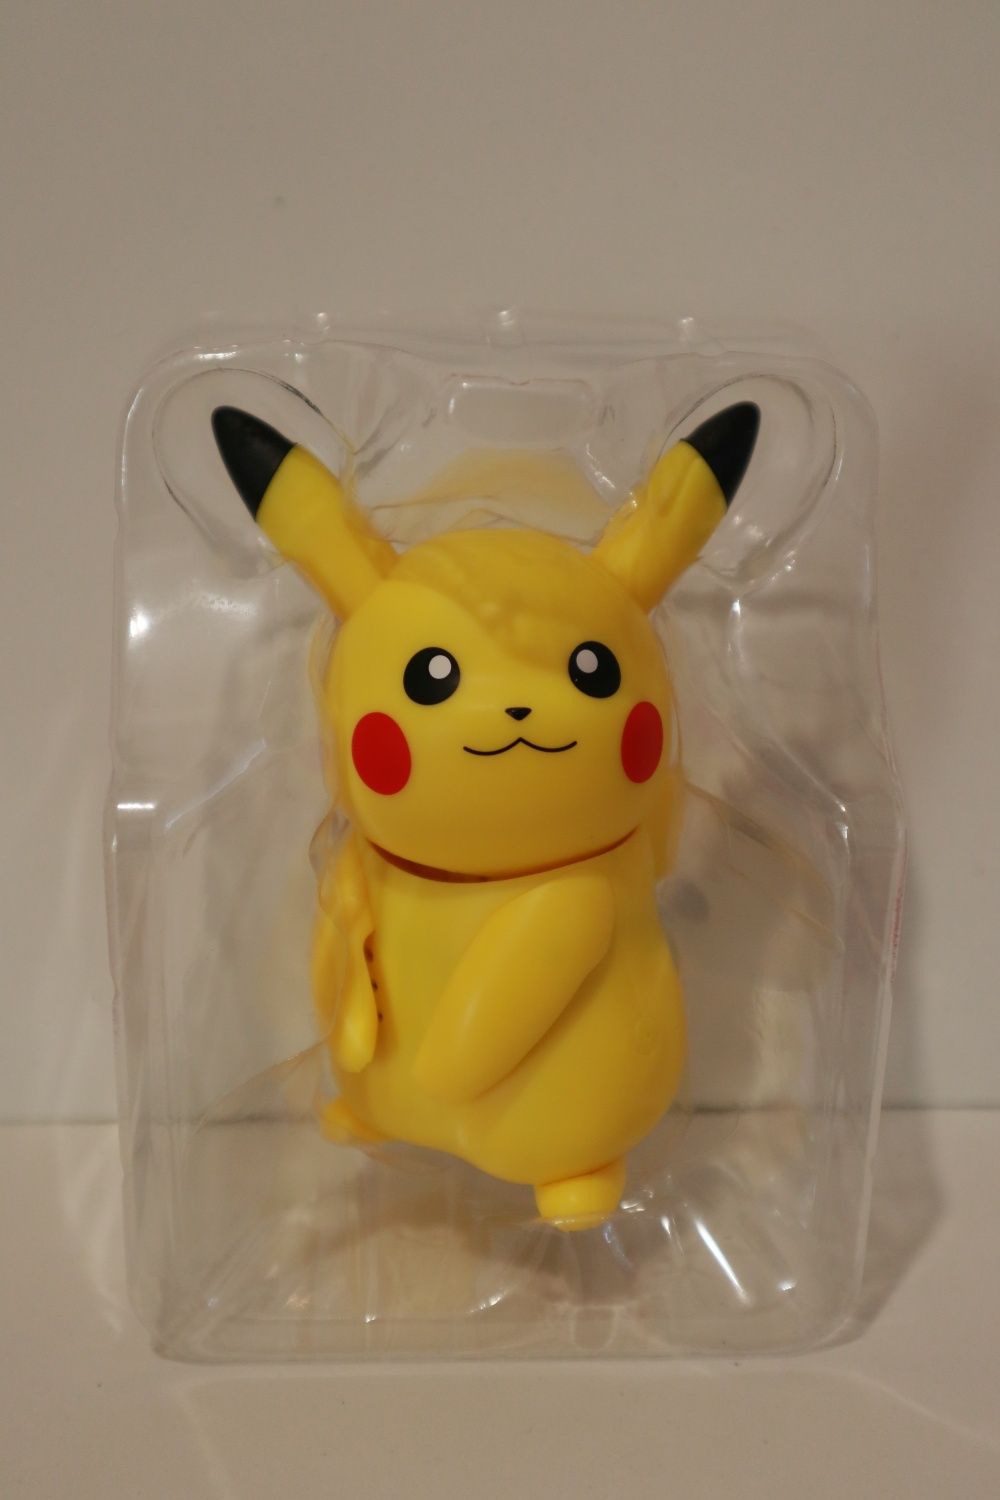 Інтерактивна іграшка Пікачу pokemon Pikachu електронна розмовляє рухає